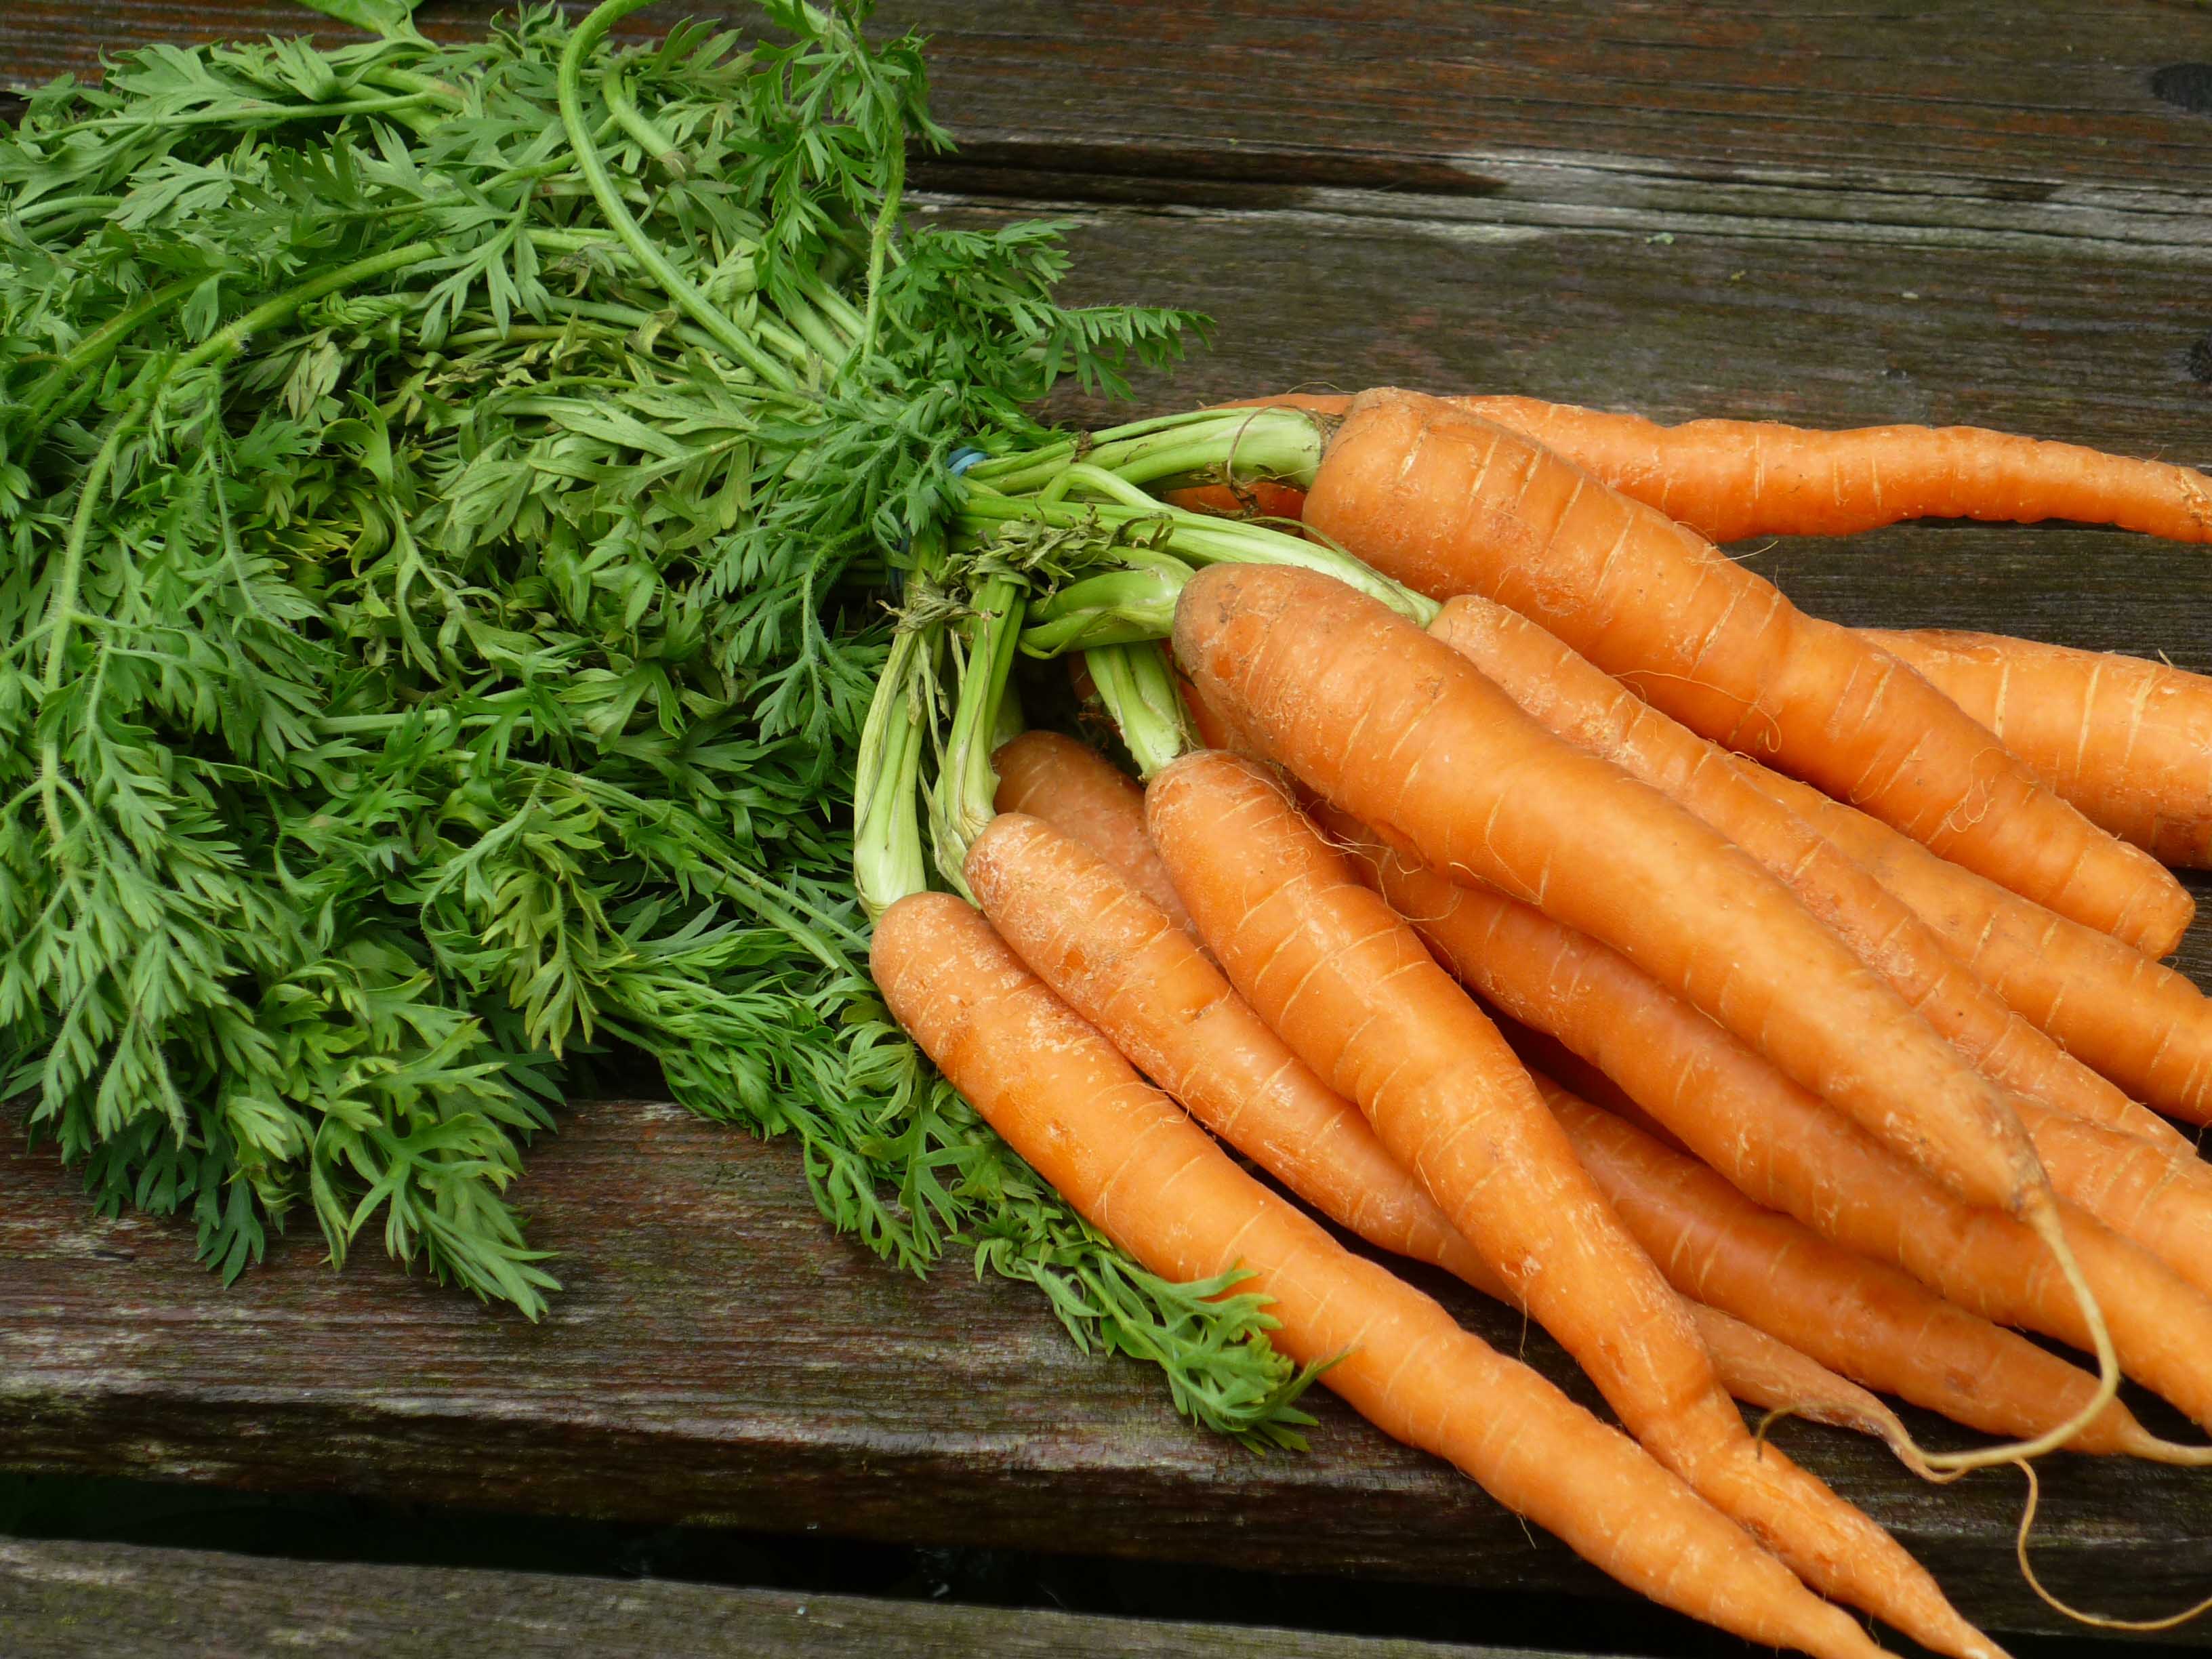 pierderea în greutate purpuroasă de morcov